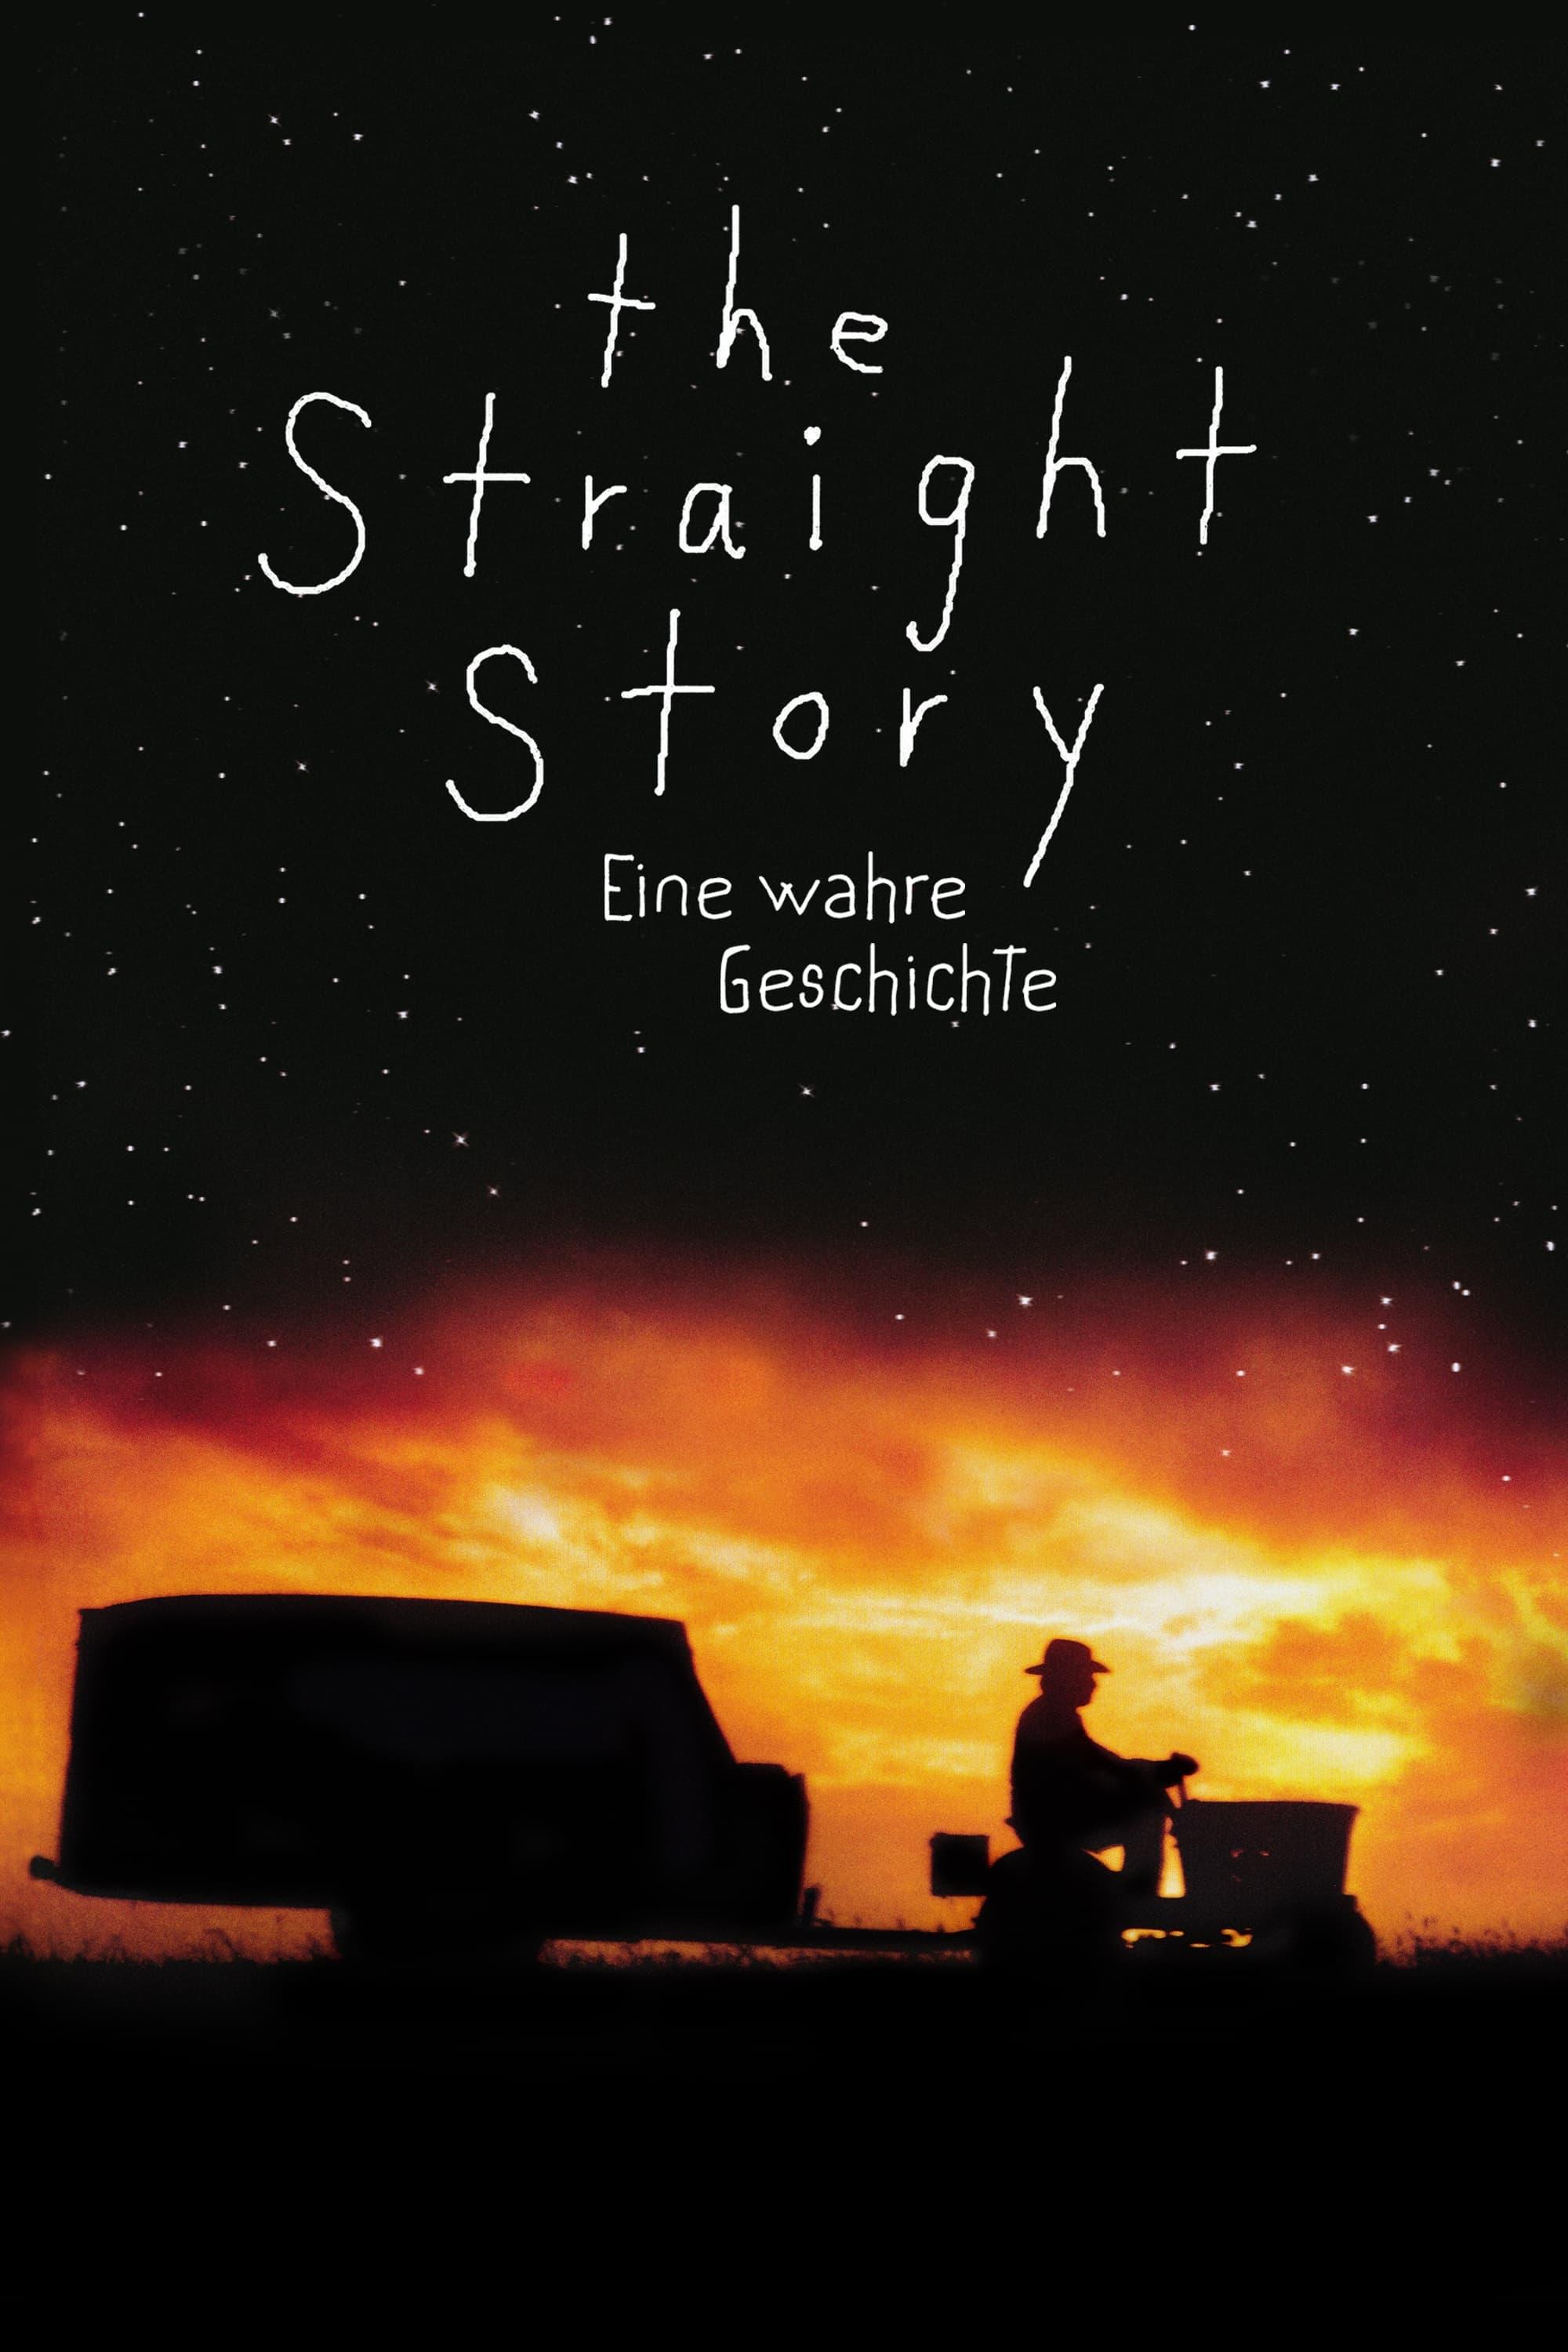 The Straight Story - Eine wahre Geschichte poster